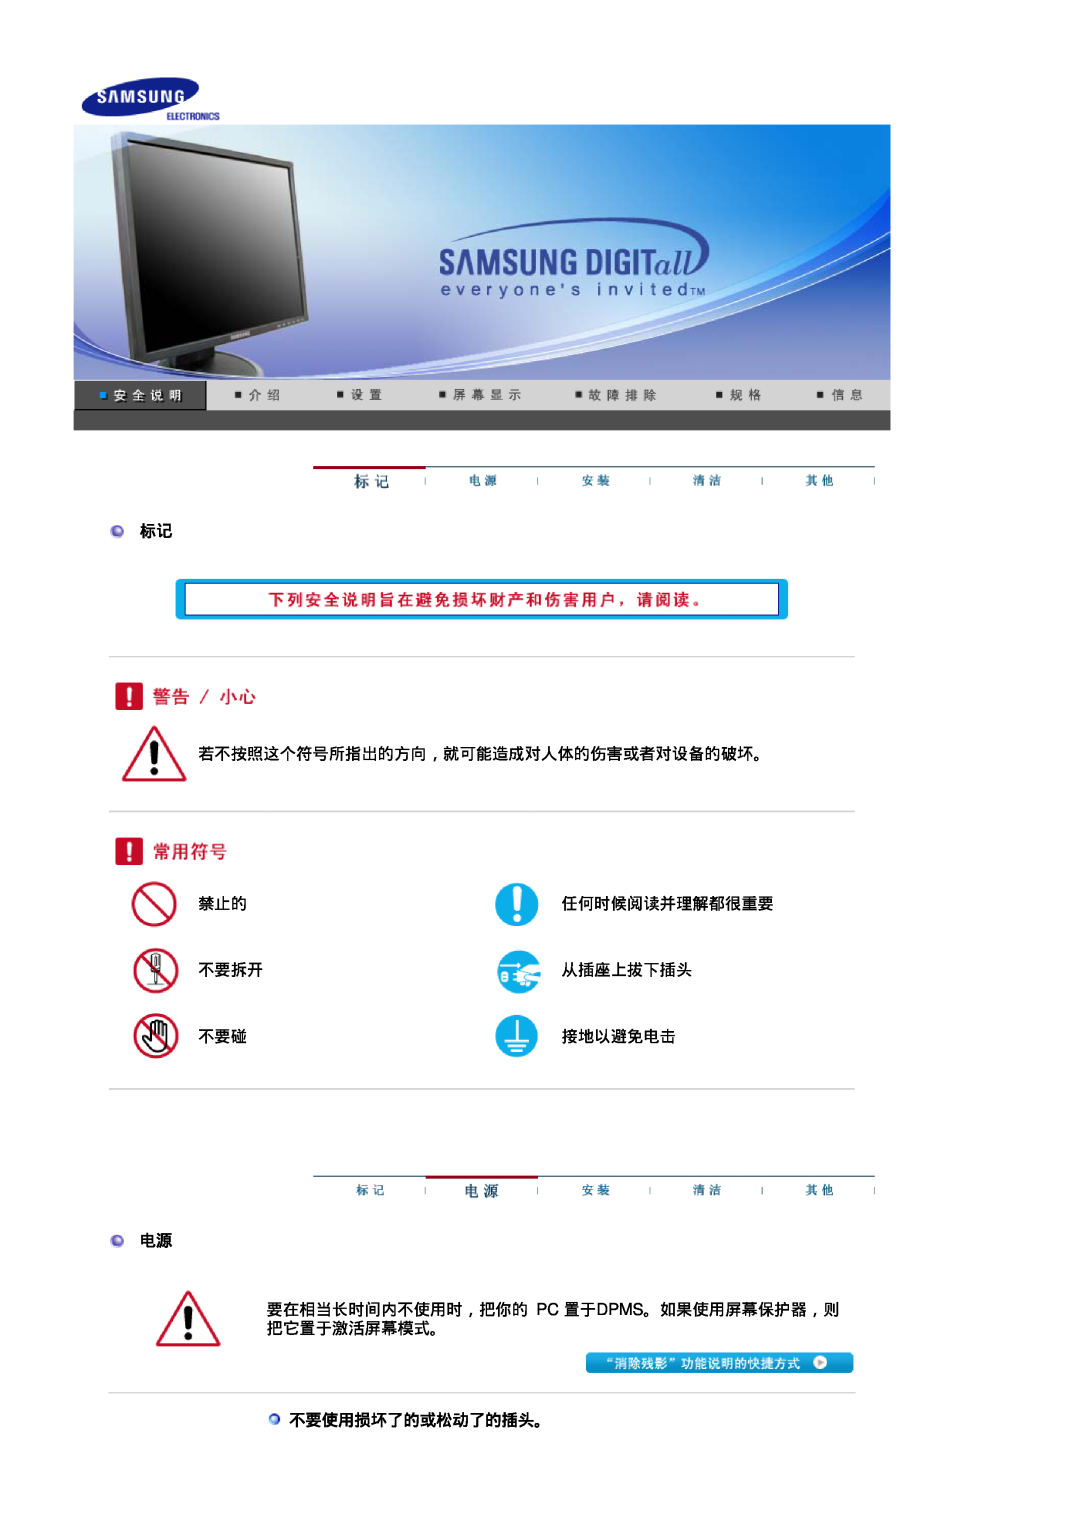 Samsung LS17HADKSX/EDC manual 若不按照这个符号所指出的方向，就可能造成对人体的伤害或者对设备的破坏。, 任何时候阅读并理解都很重要, 不要拆开, 从插座上拔下插头, 接地以避免电击, 不要使用损坏了的或松动了的插头。 